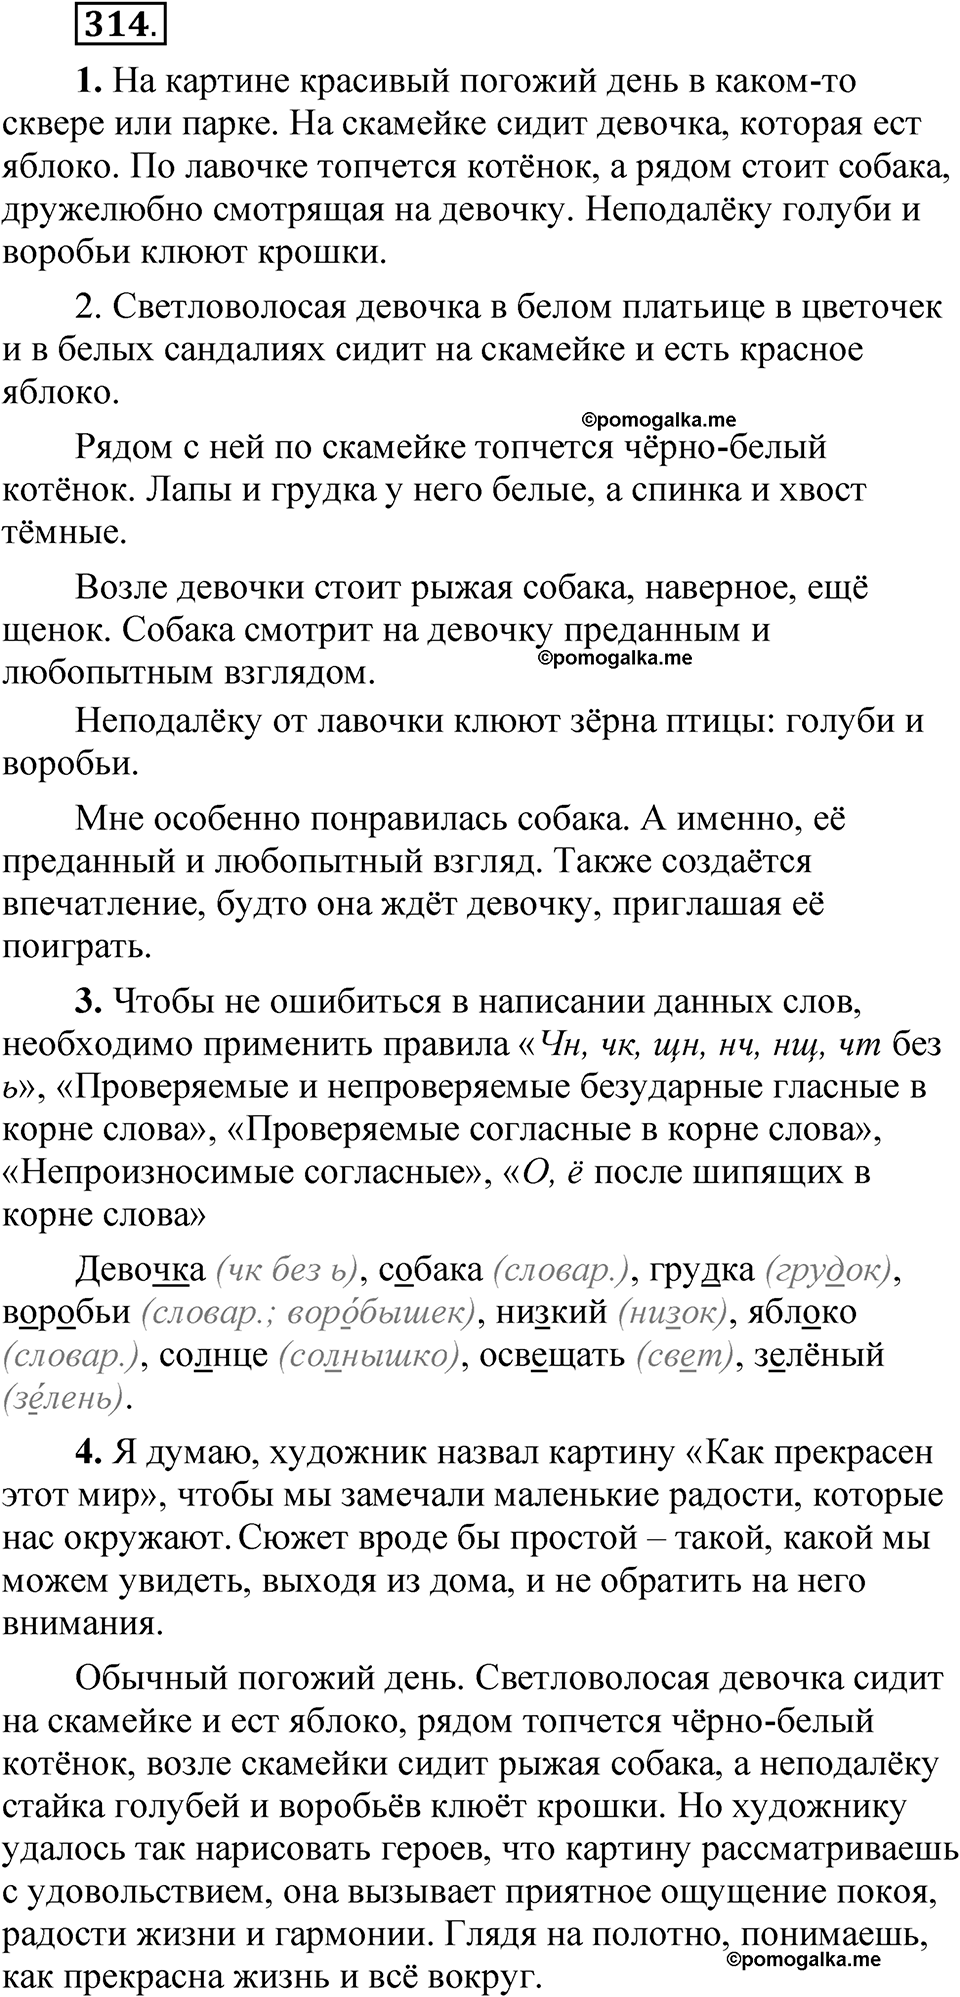 страница 224 упражнение 314 русский язык 5 класс Быстрова, Кибирева 1 часть 2021 год